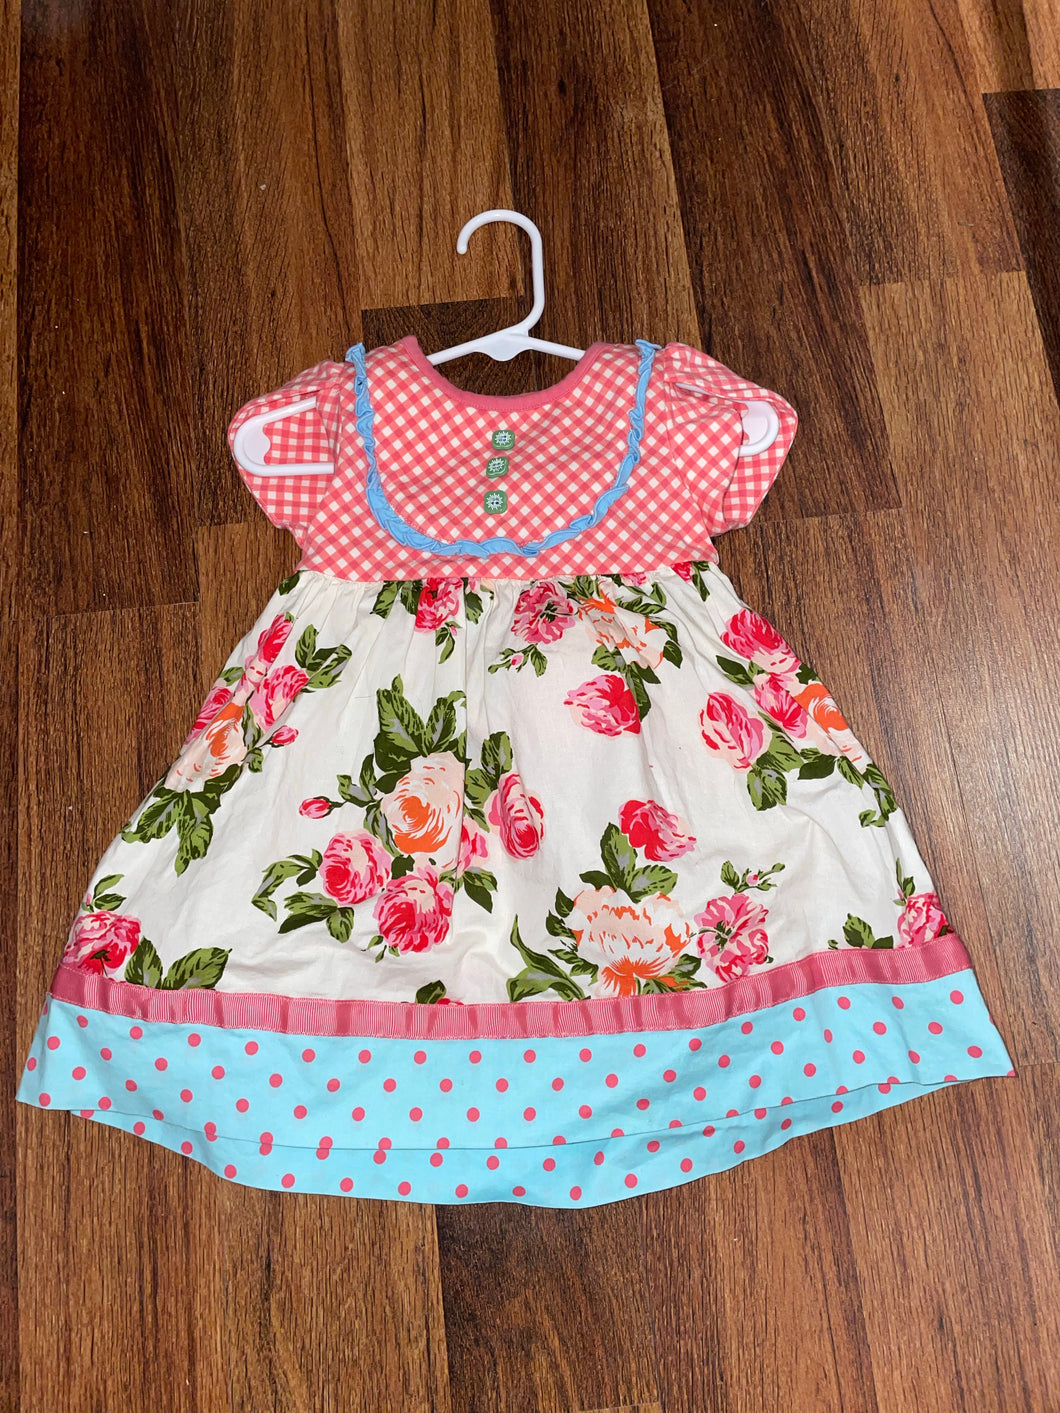 Matilda Jane 12-18m dress w/bloomers